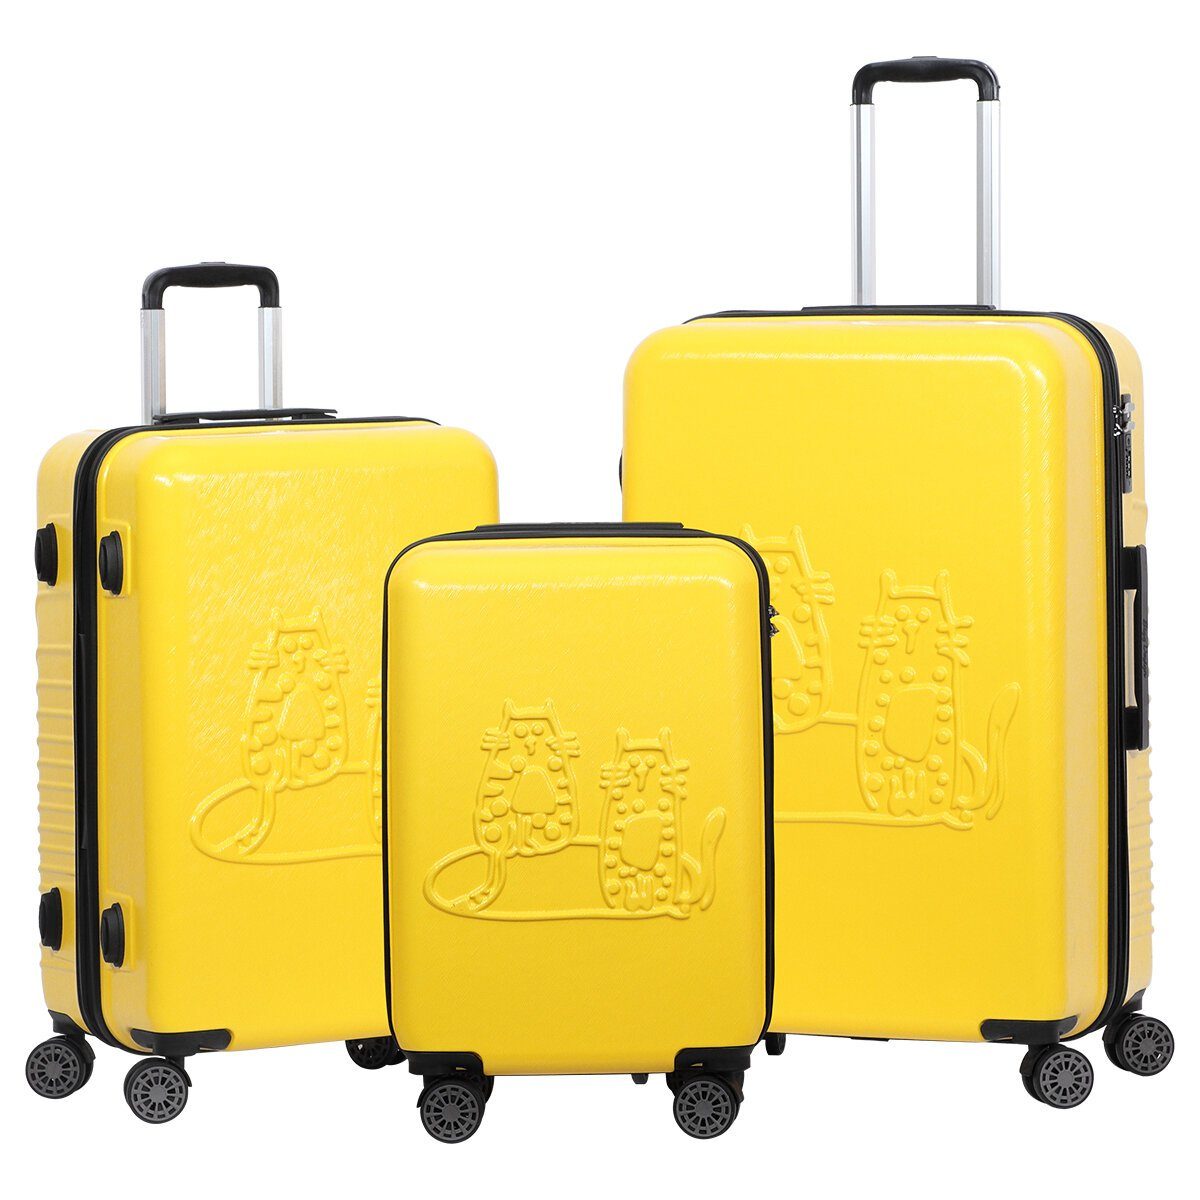 BIGGDESIGN Koffer Biggdesign Cats Koffer Set Kofferset 3 teilig Hartschale Gelb